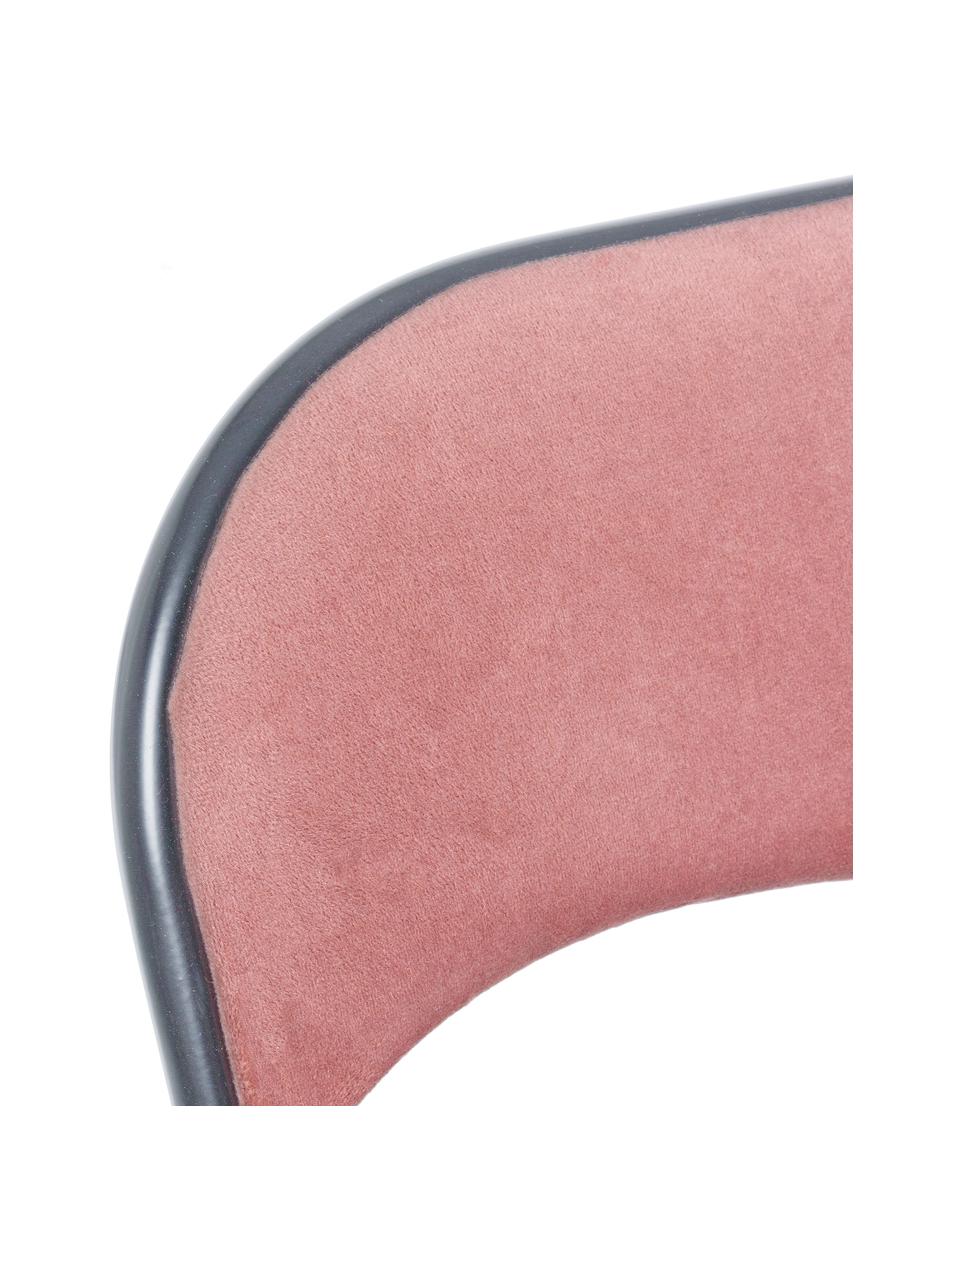 Samt-Klappstuhl Amal, Bezug: Polyestersamt, Gestell: Metall, pulverbeschichtet, Pink, Grau, B 44 x T 44 cm